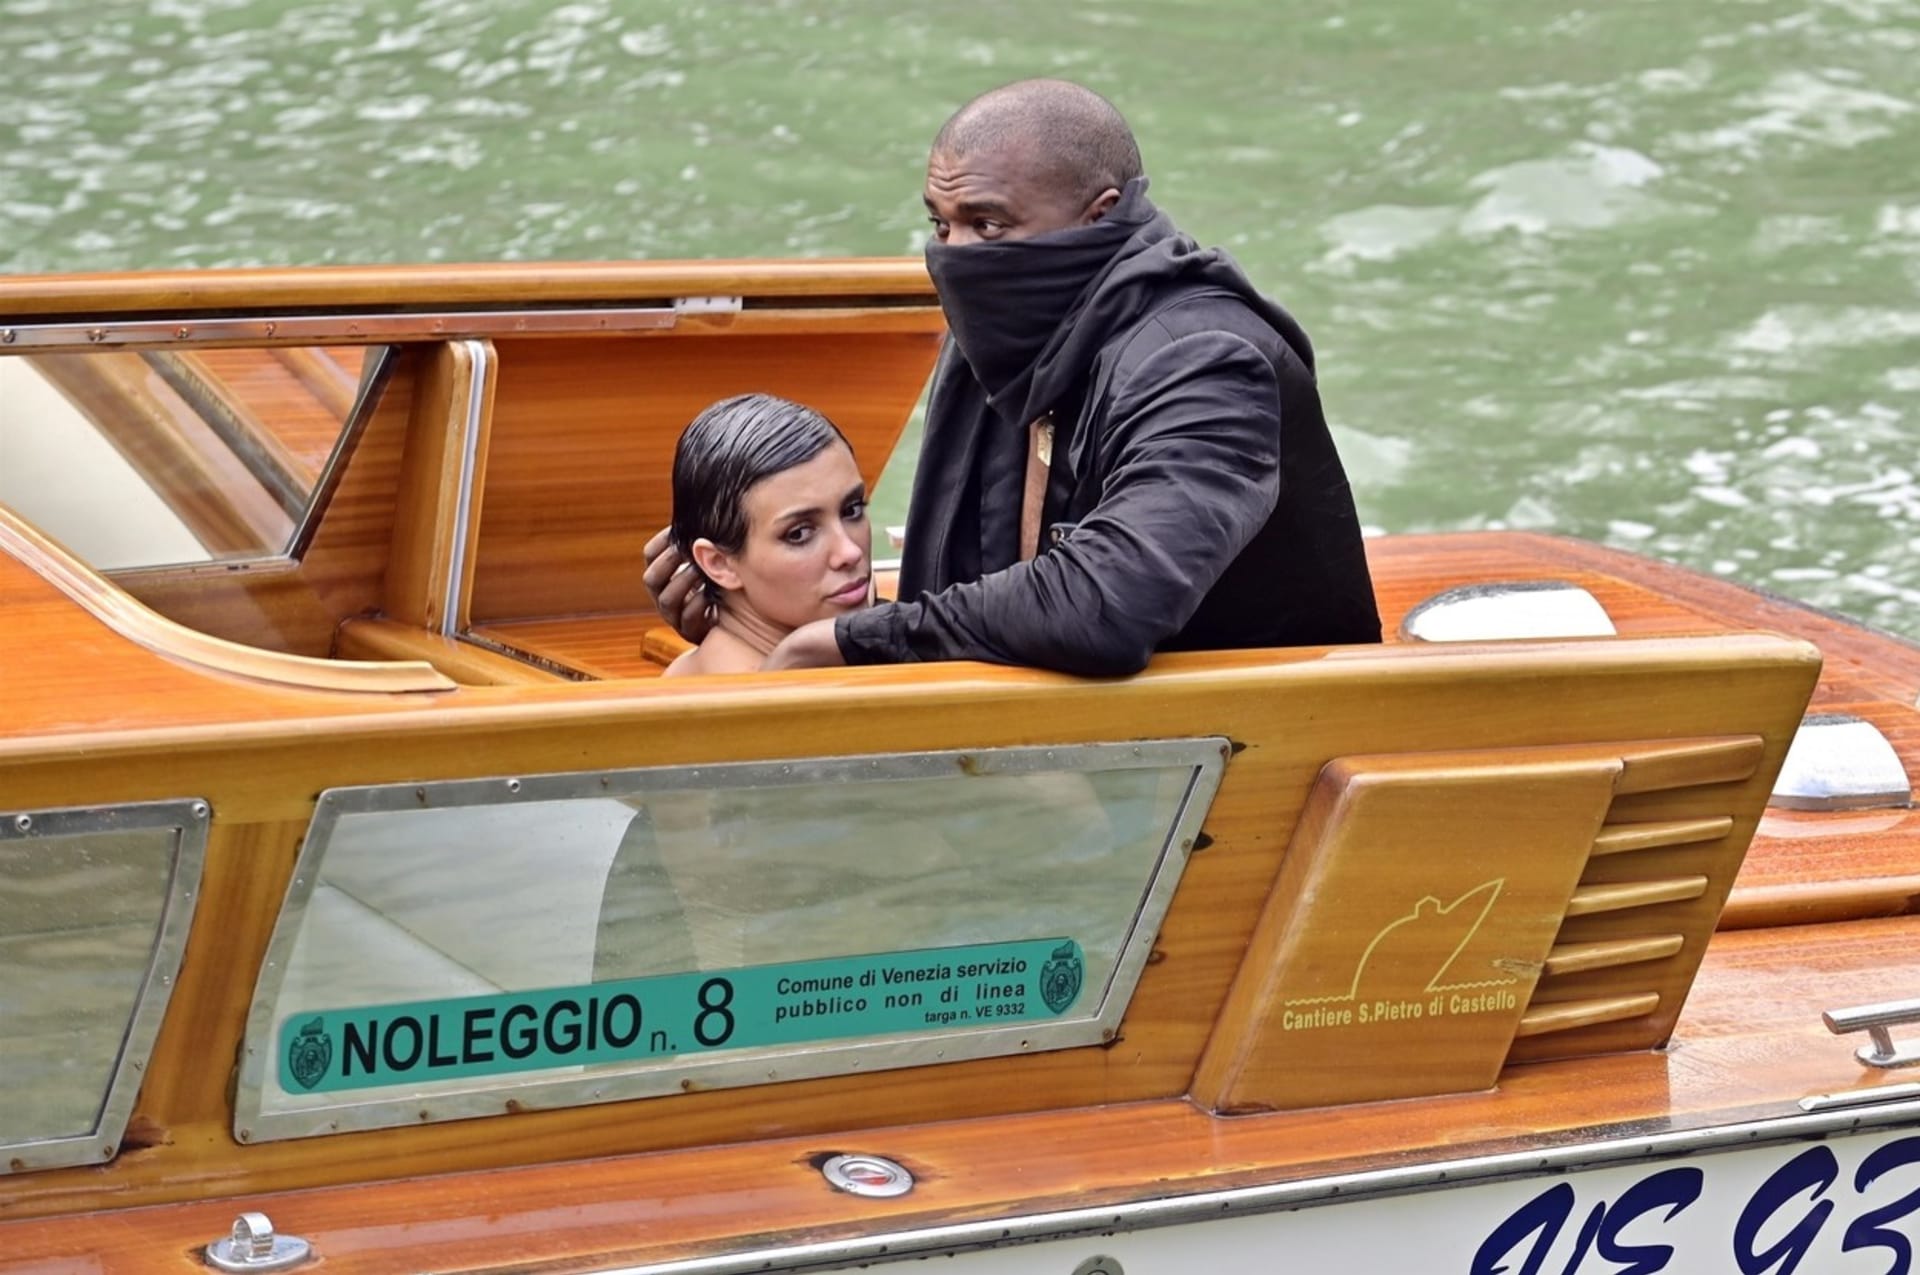 Kanye West a Bianca Censori už mají doživotní zákaz na loďky v Benátkách. Důvodem je odhalování a diskutuje se také orální sex na veřejnosti.